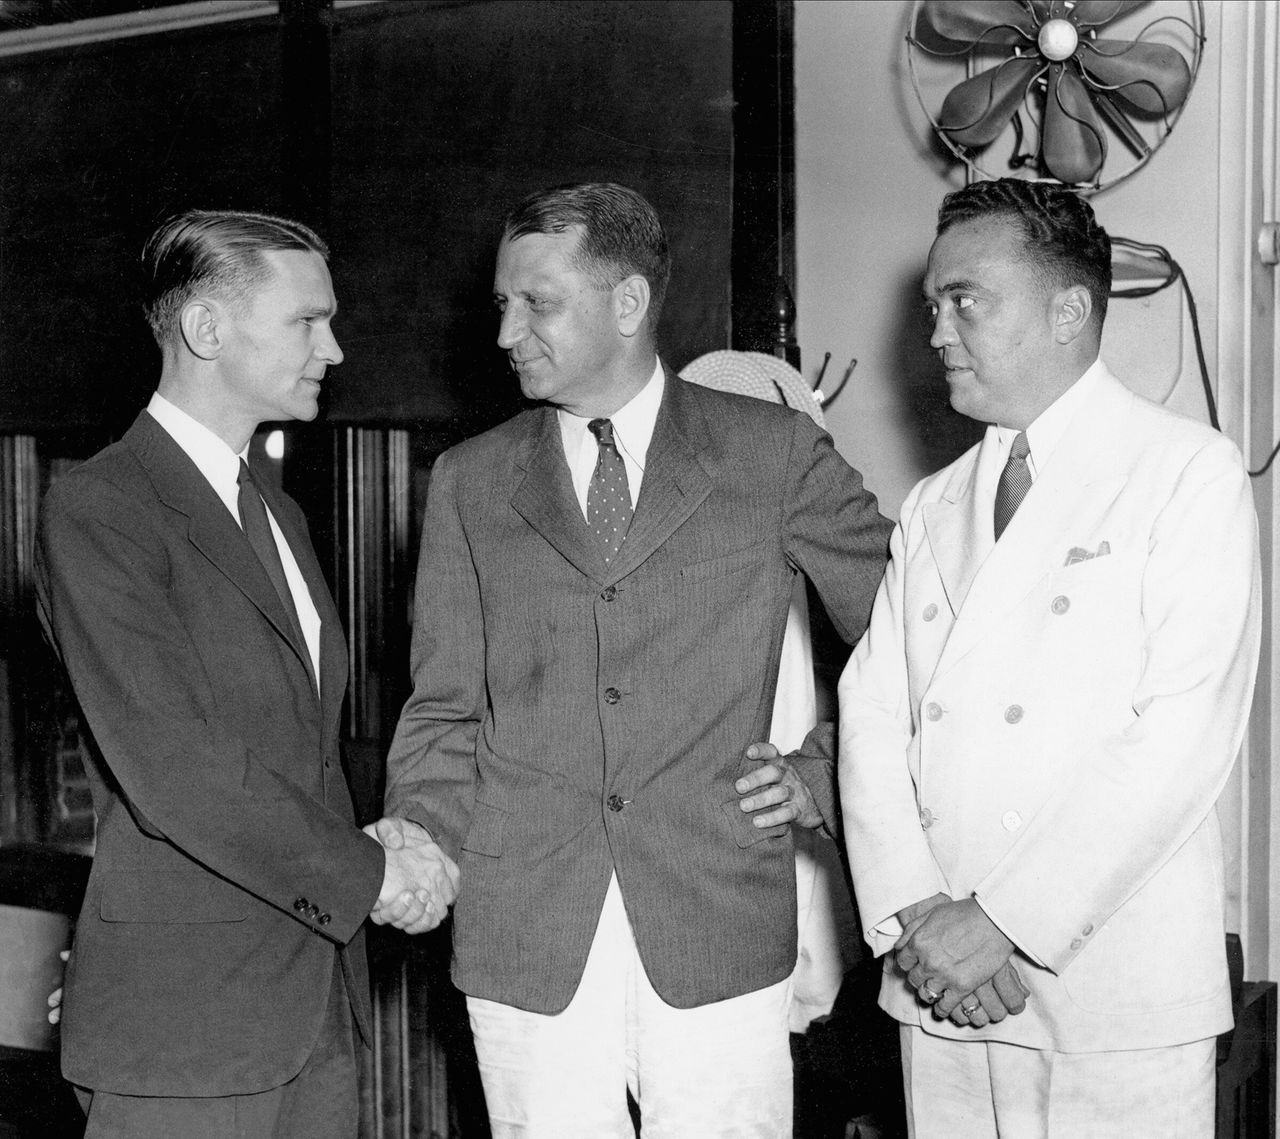  Με το άσπρο κουστούμι, ο αρχηγός του FBI, Τζέι Εντγκαρ Χούβερ. Αριστερά διακρίνεται ο Μέλβιν Πέρβις ενώ δέχεται συγχαρητήρια, από τον γενικό εισαγγελέα του Υπουργείου Δικαιοσύνης, Γουίλιαμ Στάνλεϊ. (26 Ιουλίου 1934)